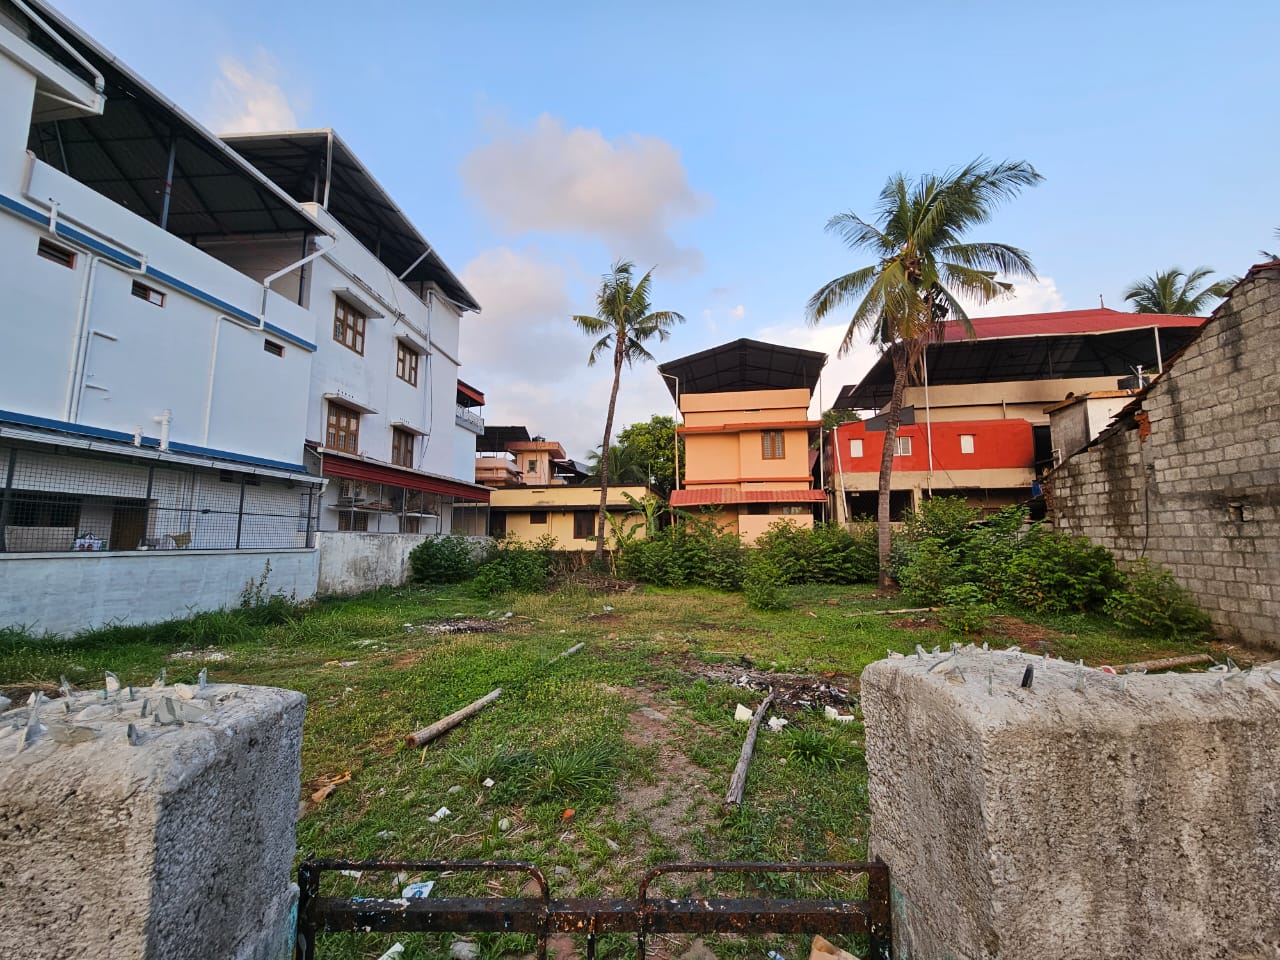 Commercial land for sale in Kizhakke Kotta, East Fort Medical center, Thrissur – Mannuthy Road, Mission Quarters, Chelakkottukara, Thrissur